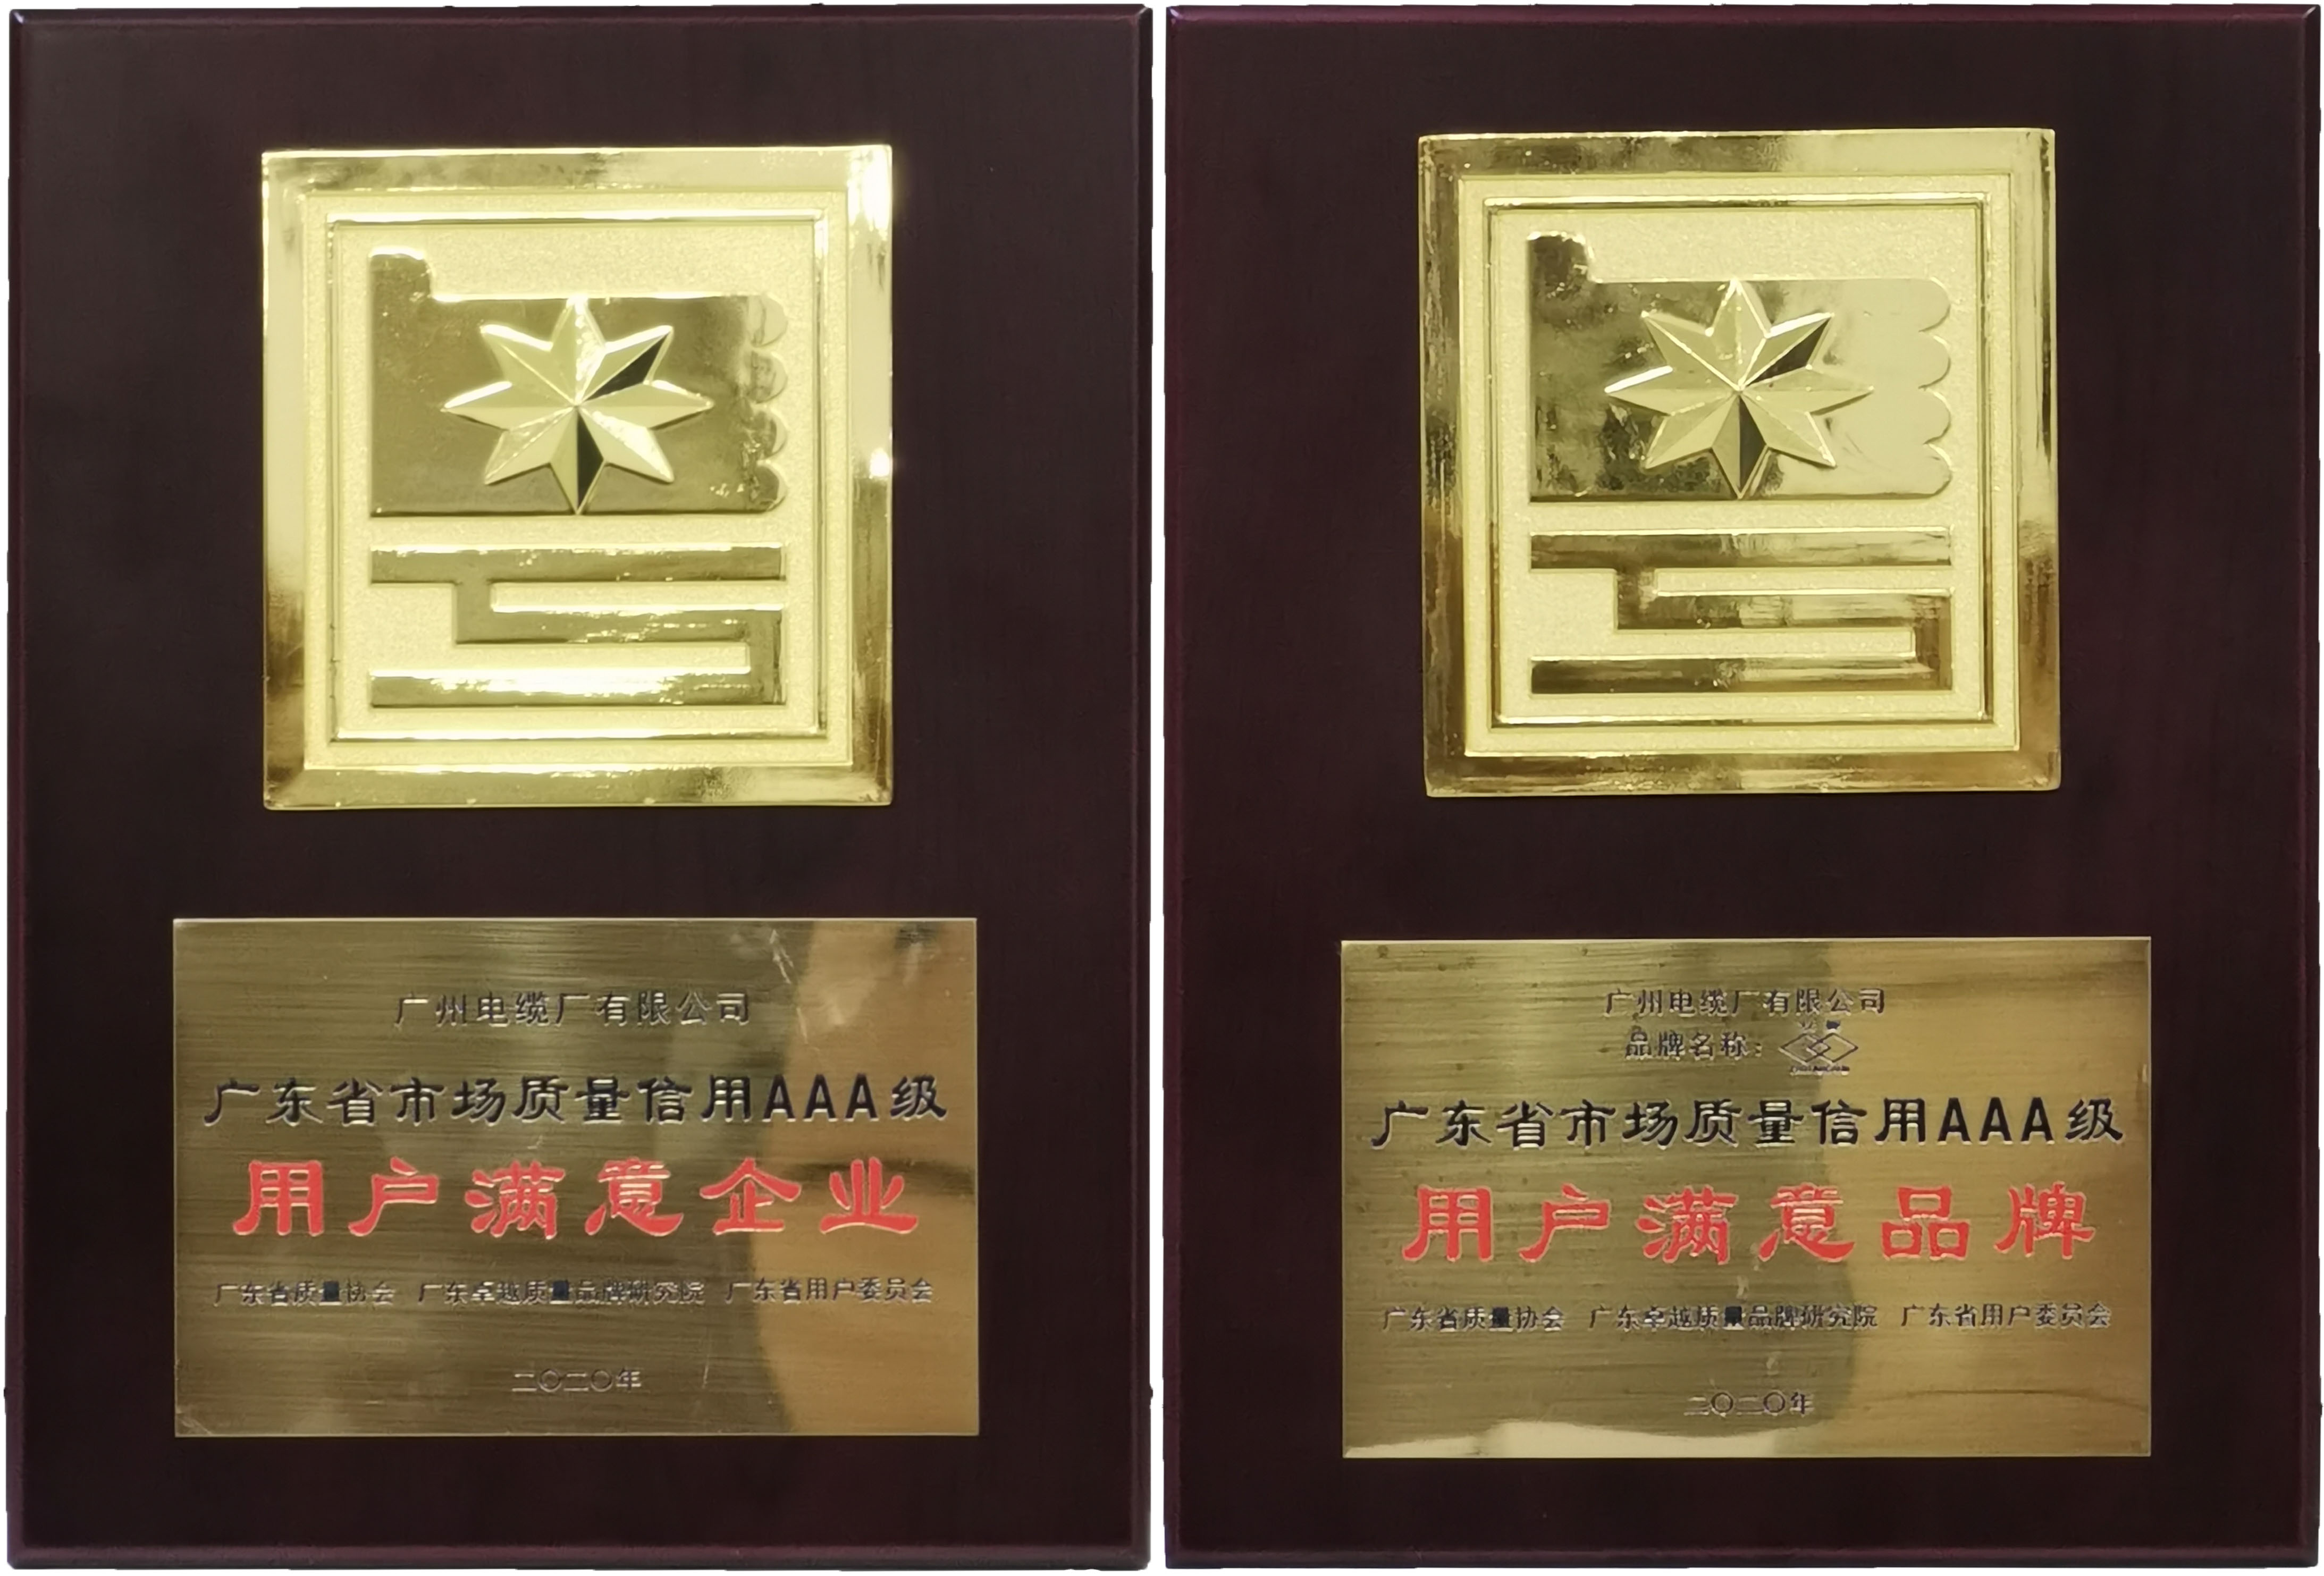 广州电缆接受广东省市场质量信用AAA级用户满意企业和品牌荣誉奖牌